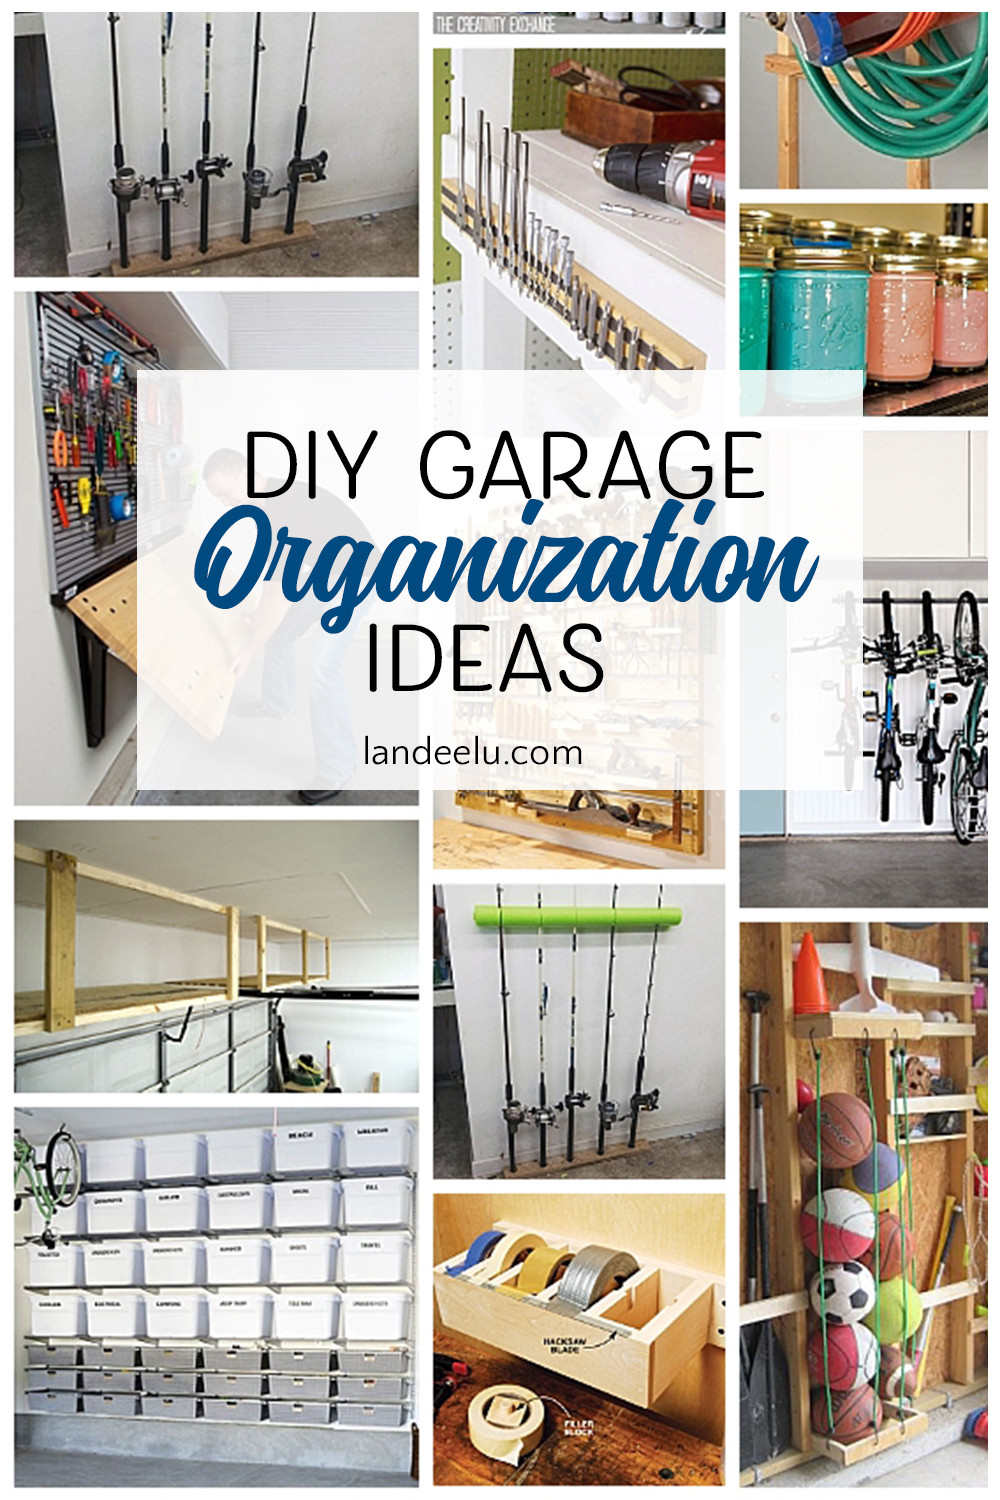 Garage Organization Ideas
 Awesome DIY Garage Organization Ideas landeelu